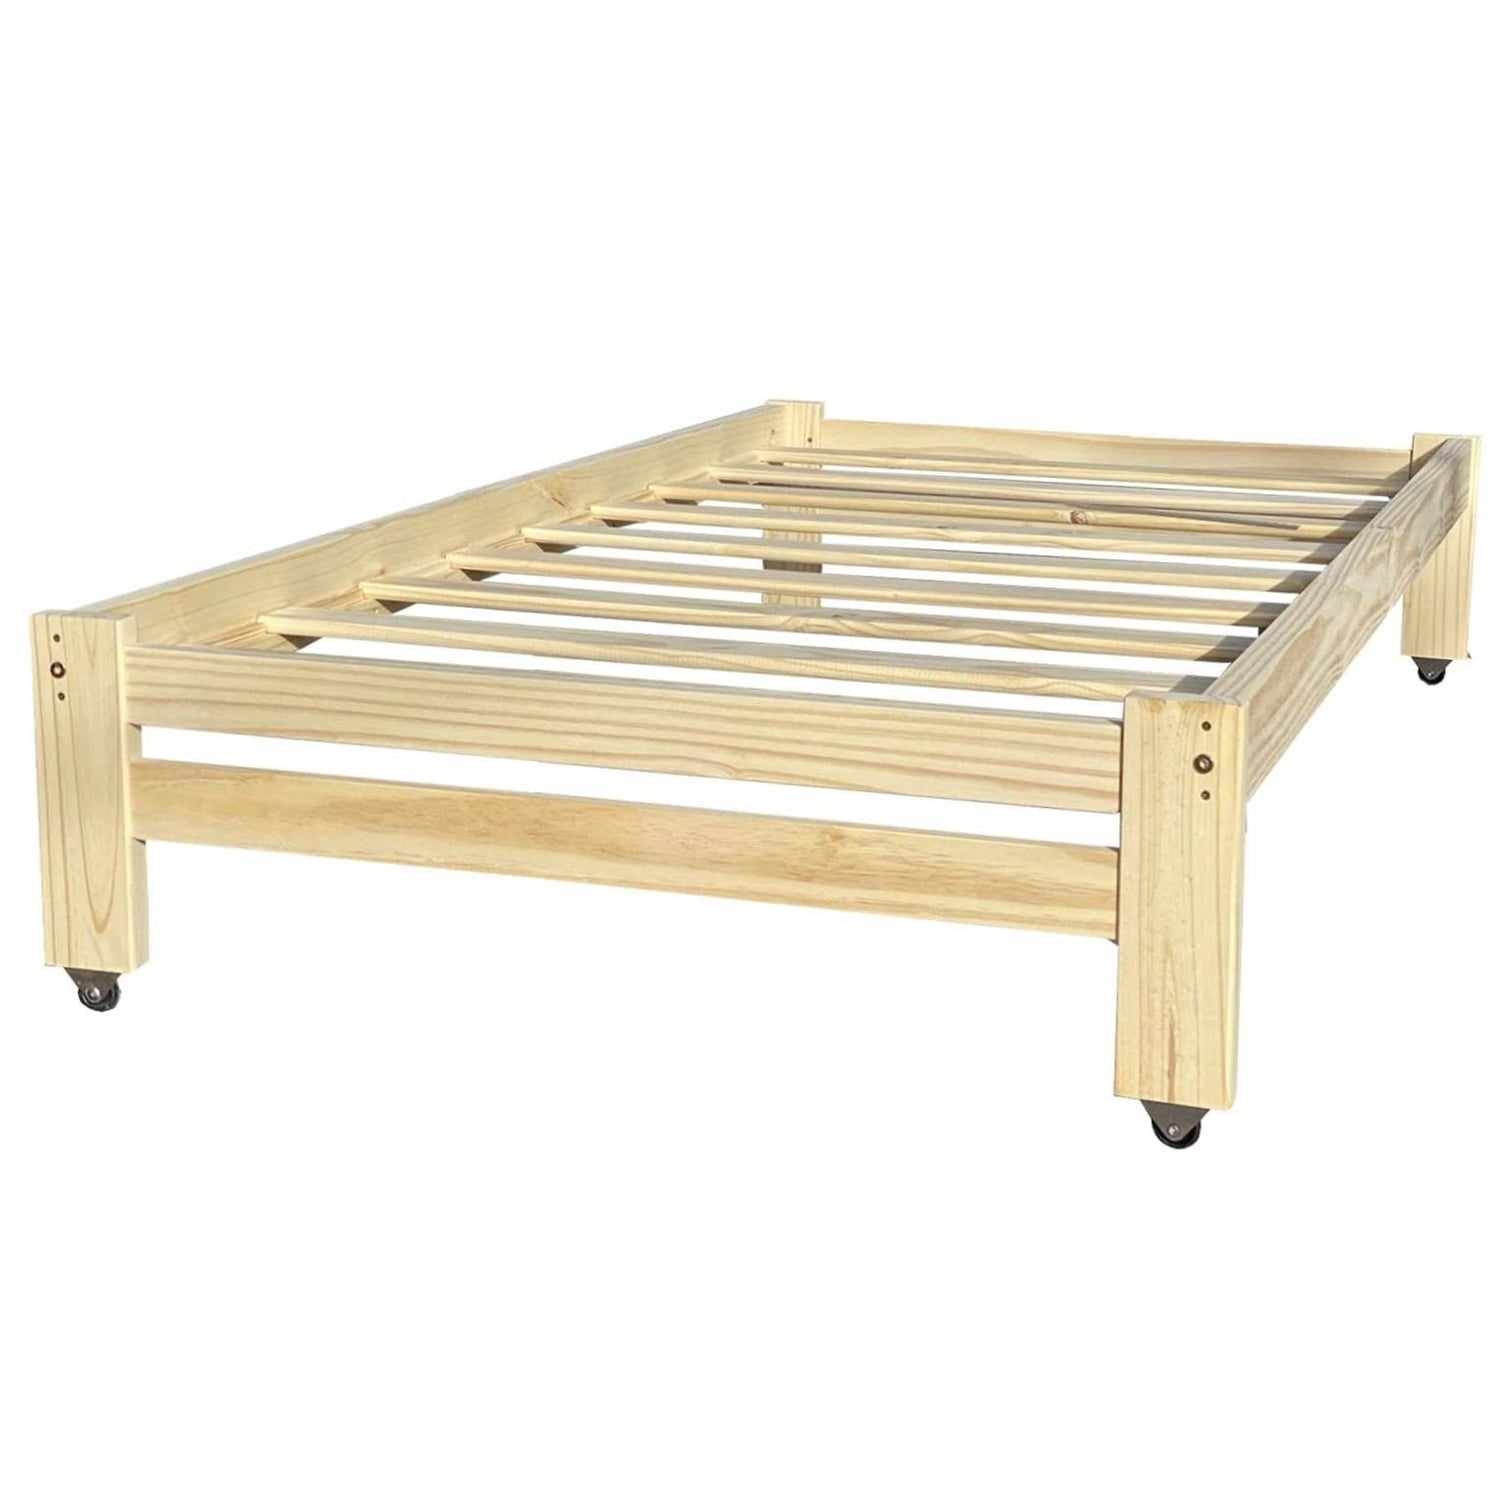 Bedroom > Bed Frames > Platform Beds - Twin Unfinished Solid Wood Platform Bed Frame With Casters Wheels